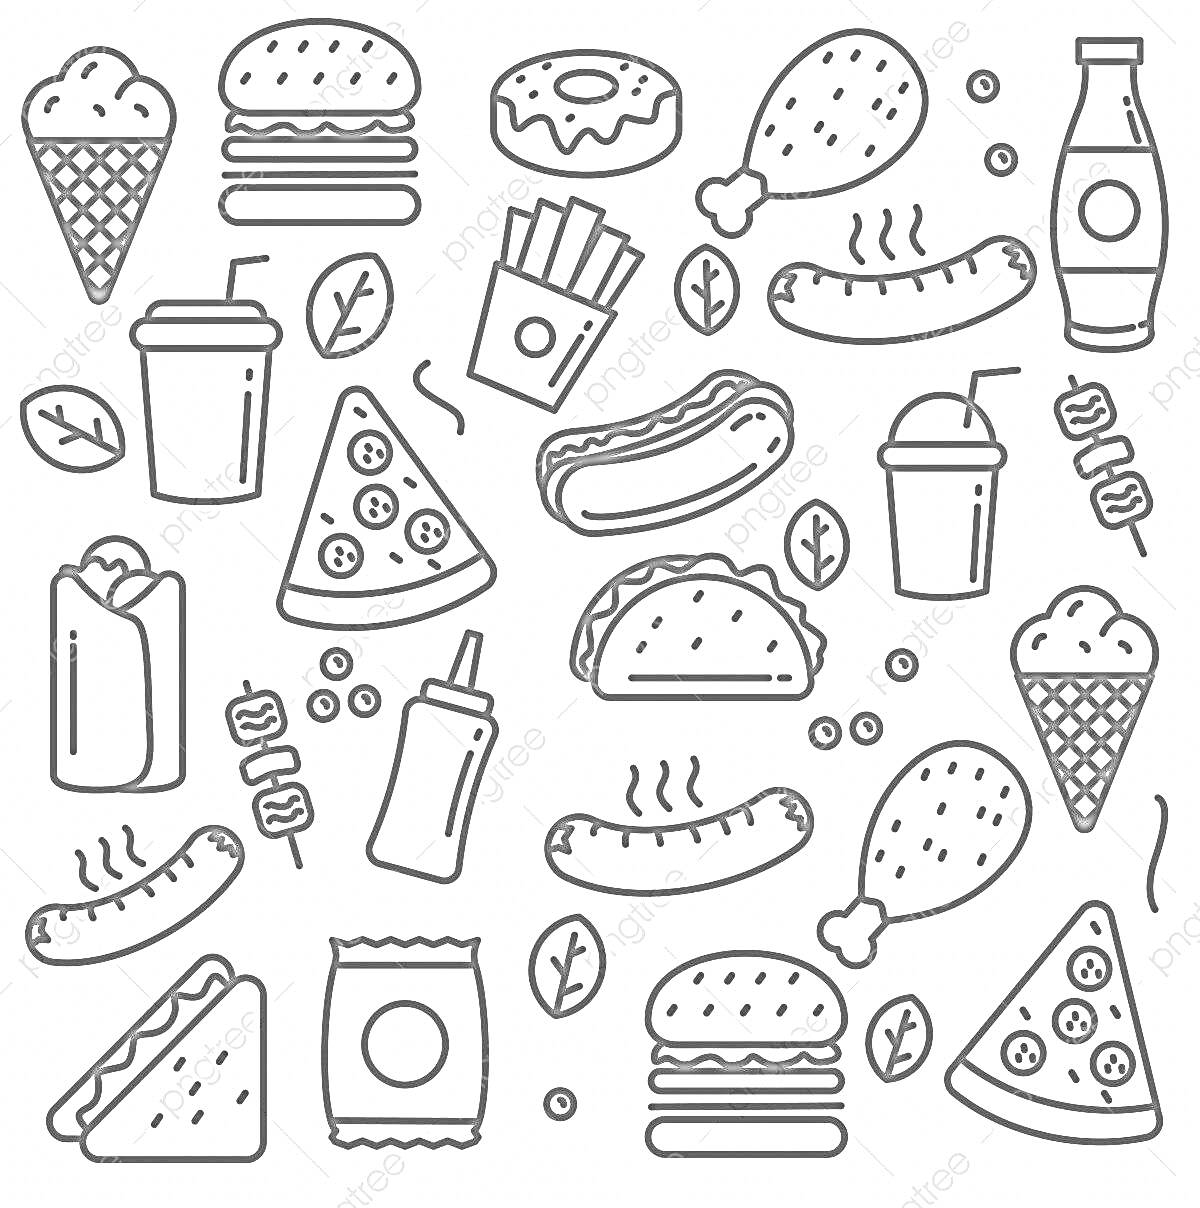 Раскраска Мини еда — мороженое в вафельном рожке, гамбургеры, пончик, куриные ножки, бутылка с напитком, картофель фри, хот-дог, напиток в стакане с трубочкой, пицца, тако, кетчуп, завёрнутая шаурма или буррито, чипсы, сосиски на шпажке